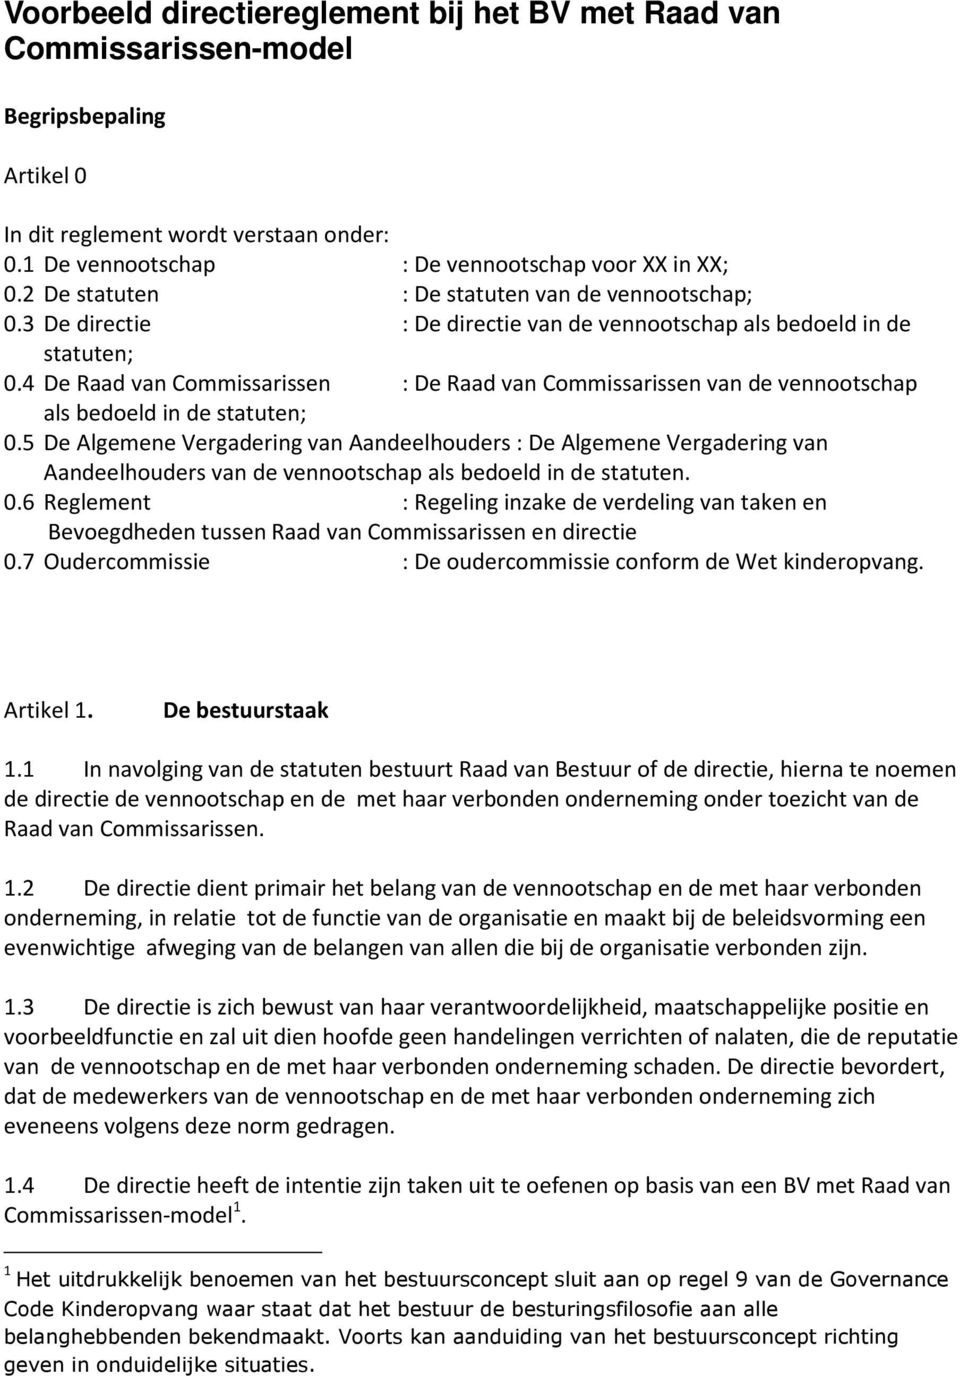 Serie van gemakkelijk gras Voorbeeld directiereglement bij het BV met Raad van Commissarissen-model -  PDF Free Download